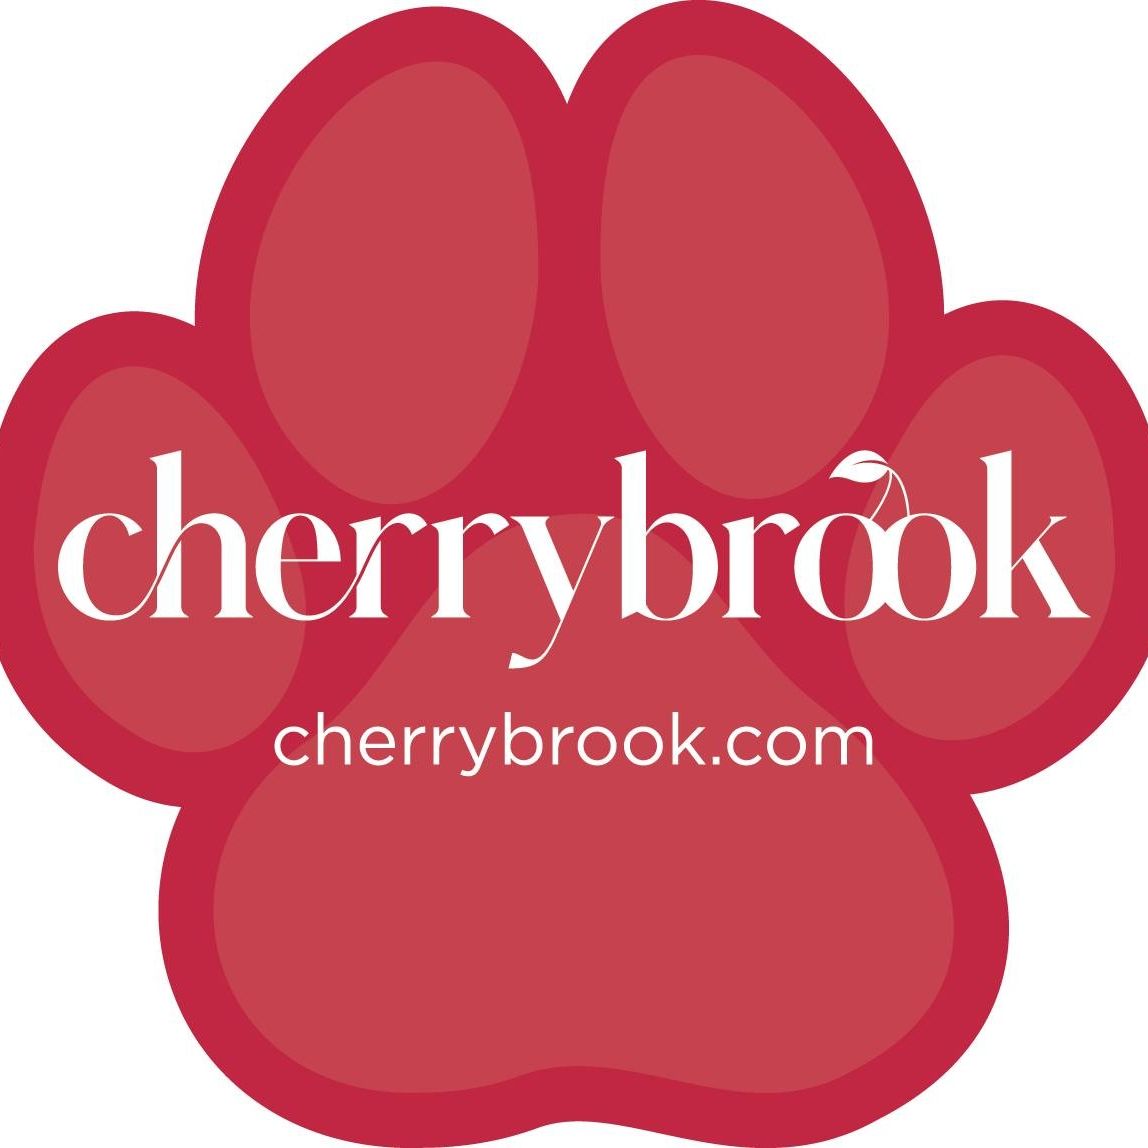 Cherrybrook